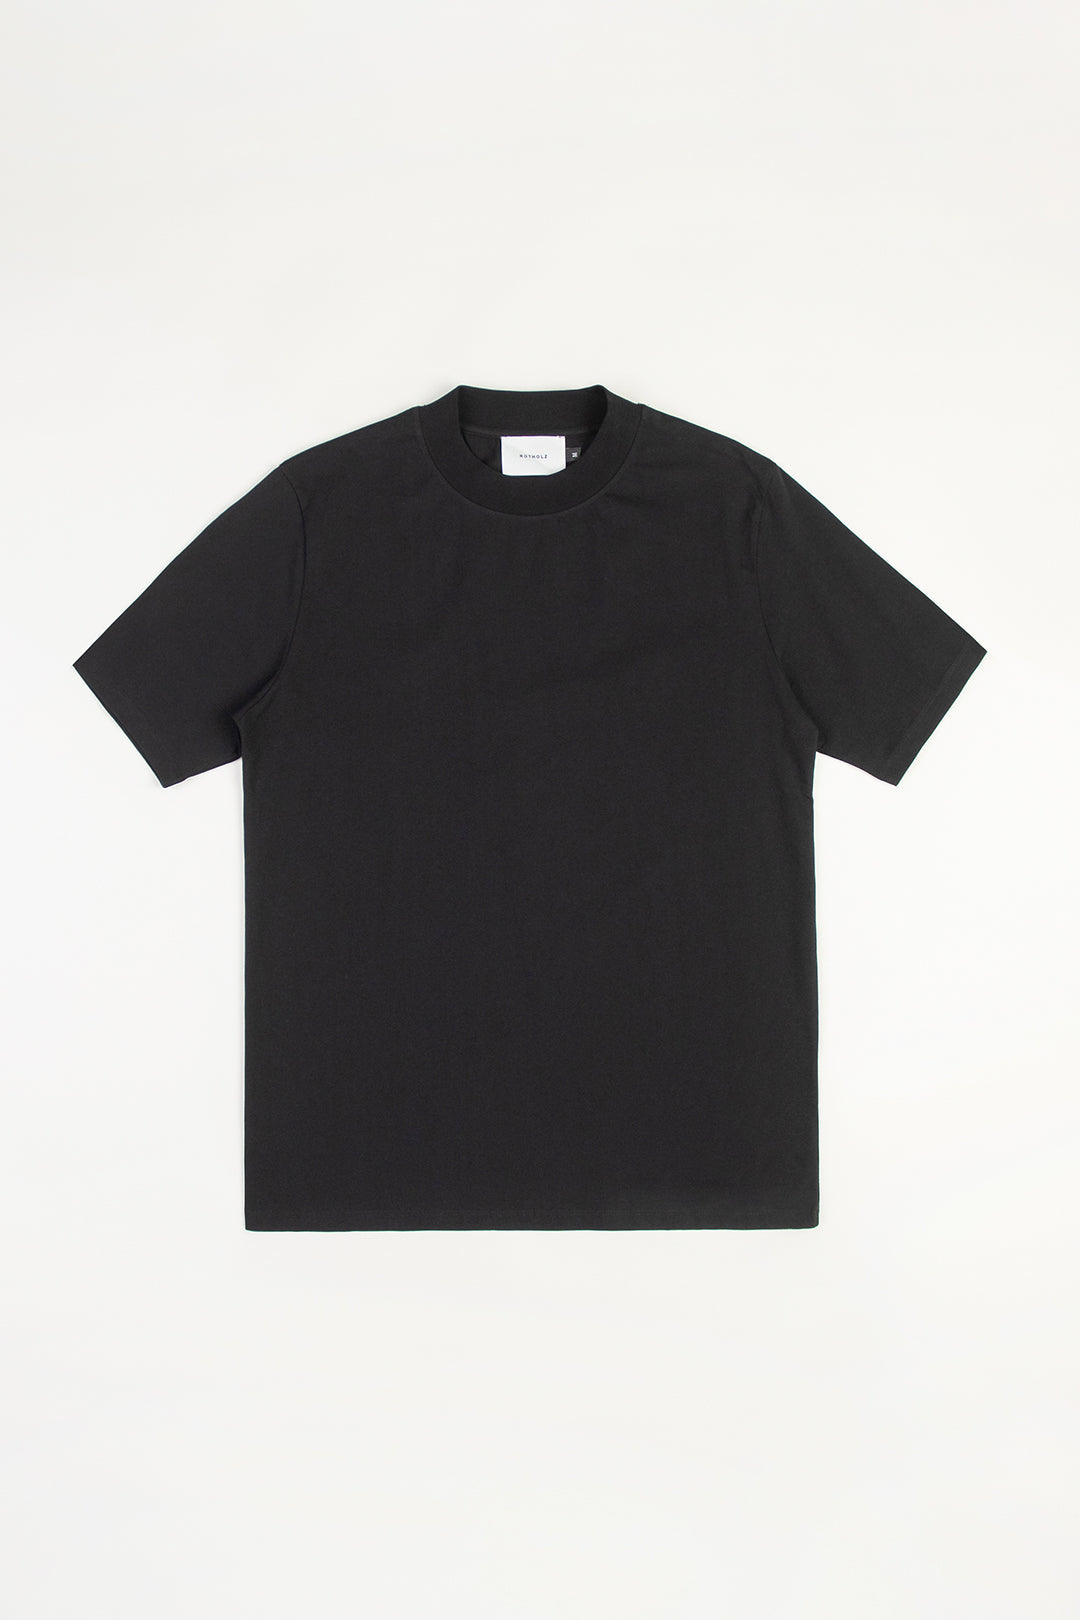 Schwarzes T-Shirt mit breitem Kragen aus 100% Bio Baumwolle von Rotholz